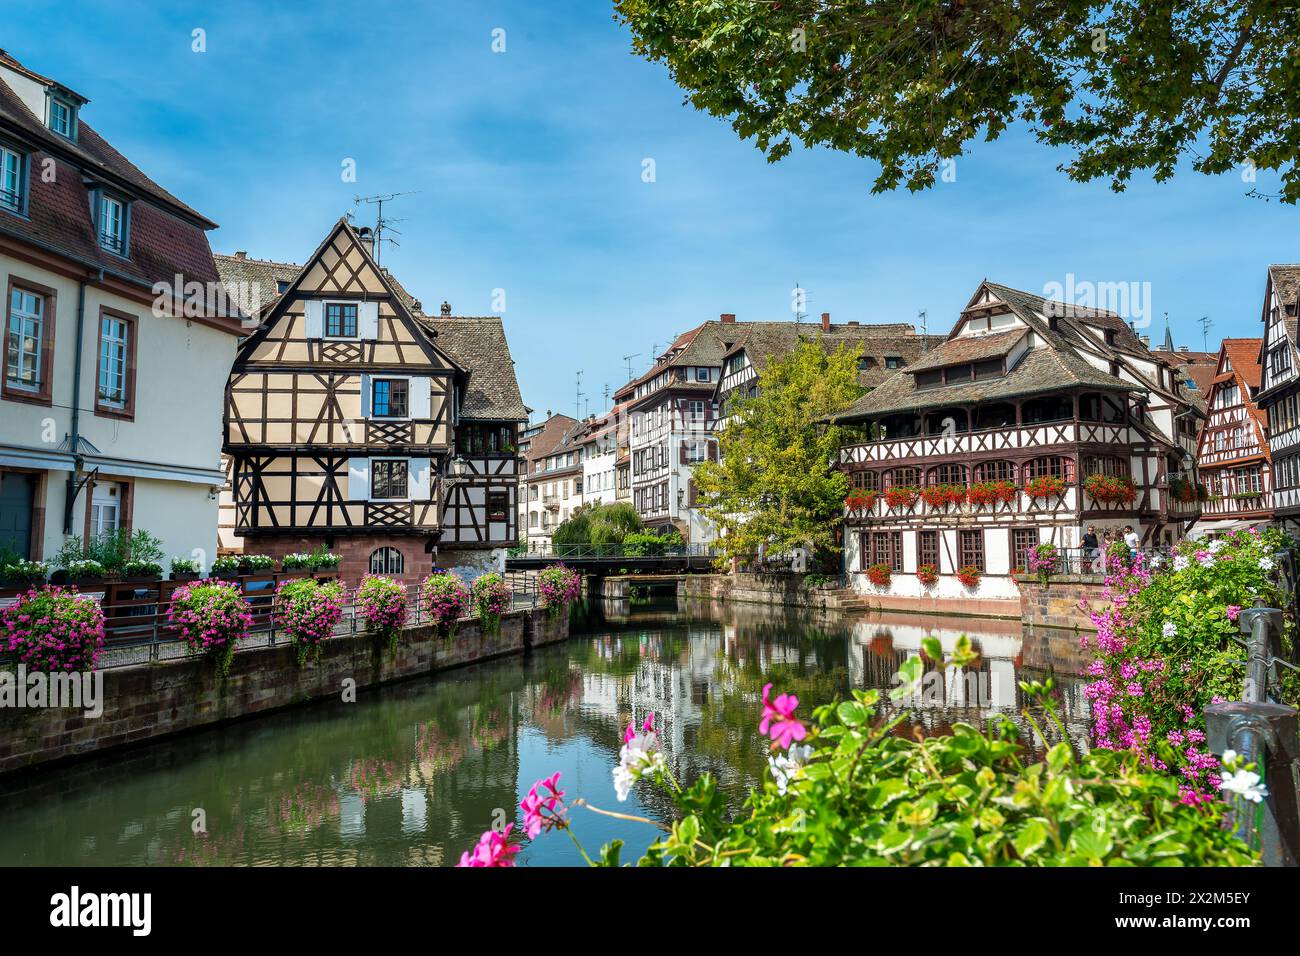 Der Fluss krank in der Petite France, einem kleinen Viertel Venedig in Straßburg, Frankreich Stockfoto